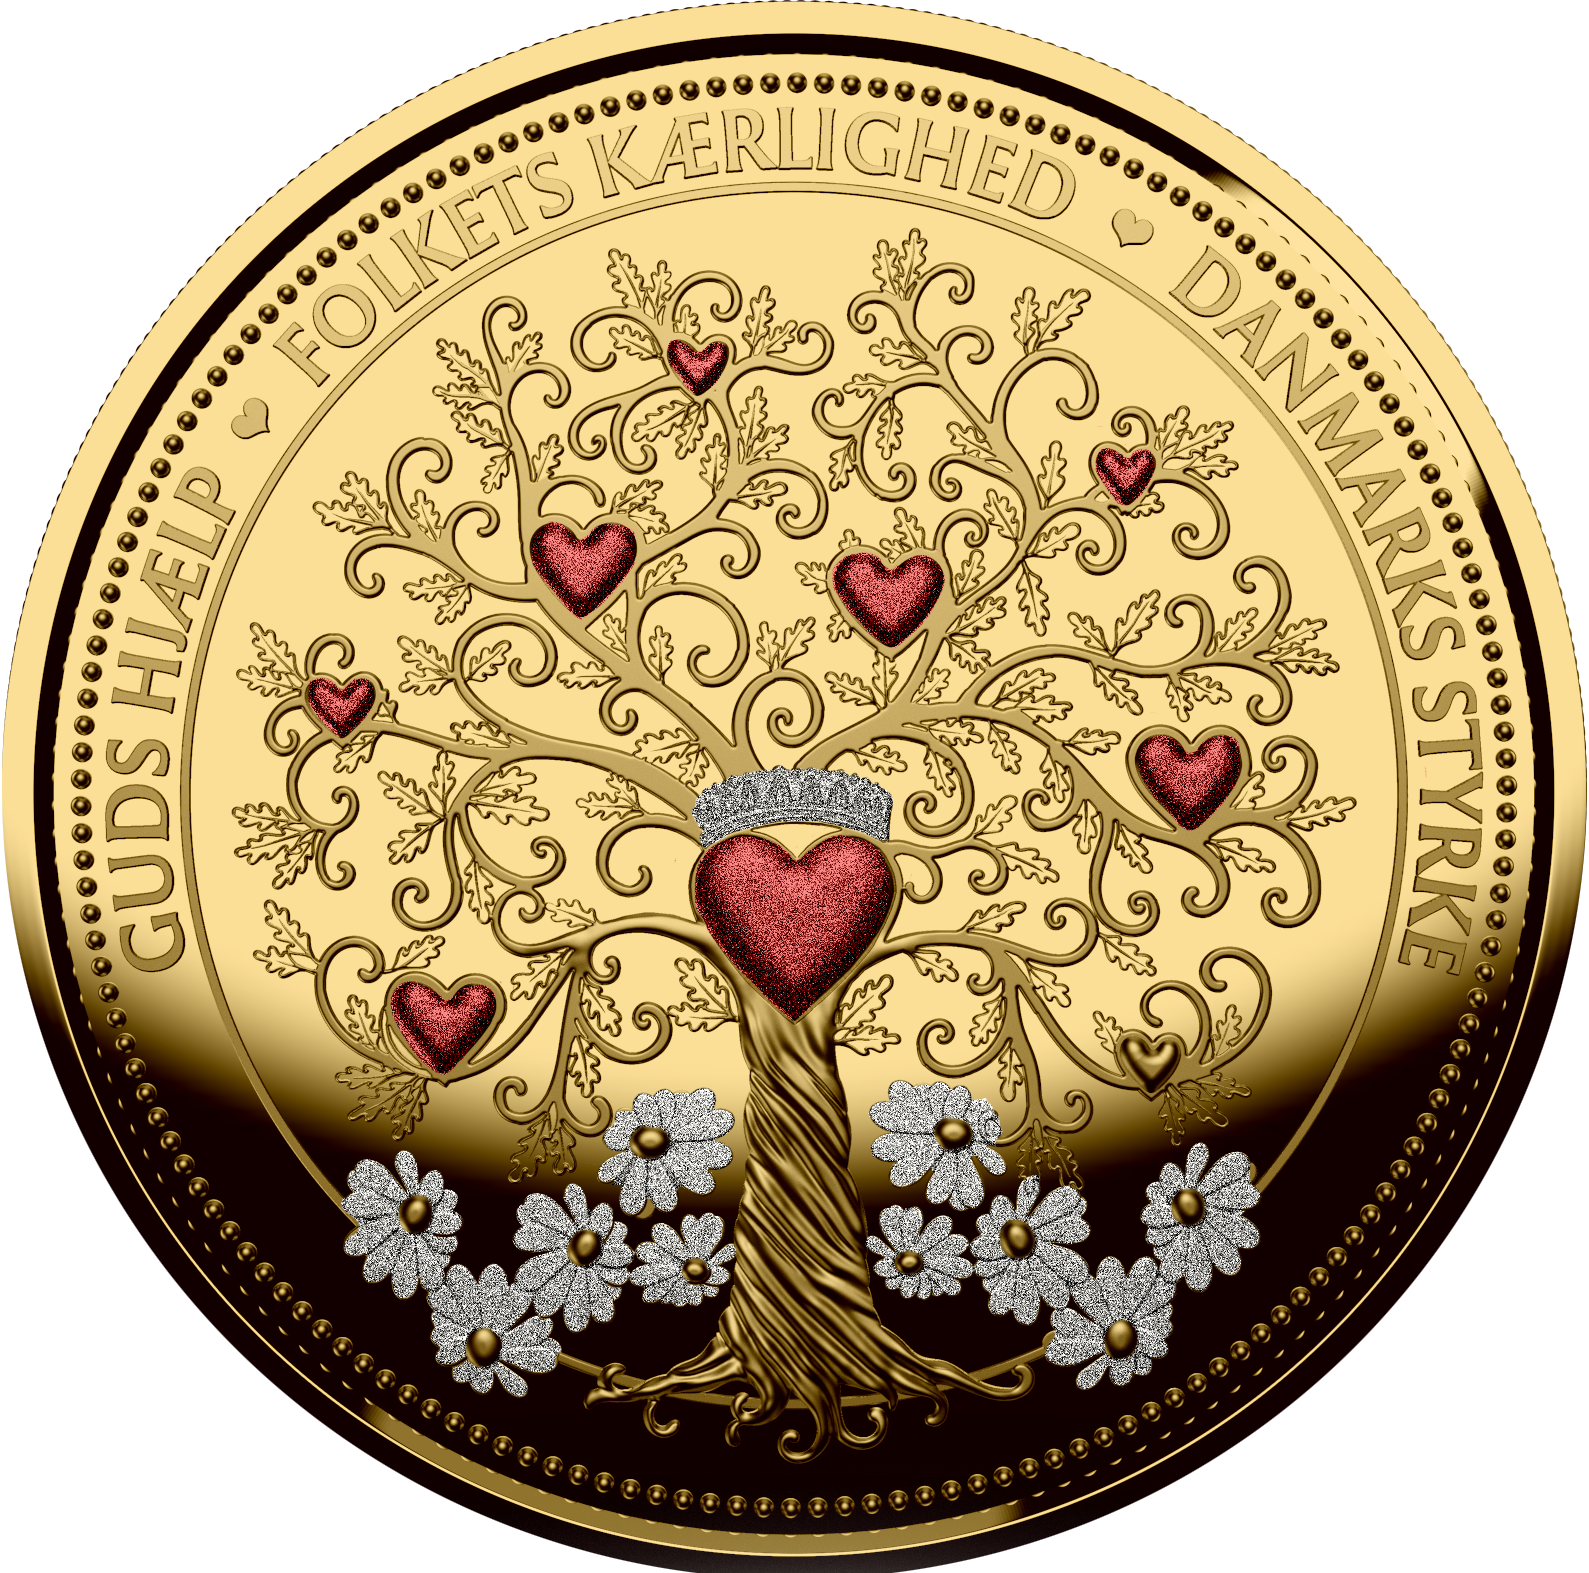 I anledning af Dronning Margrethes 50-års regentjubilæum, kan du nu bestille denne eftertragtede jubilæumsmedalje belagt med 24 karat fairmined guld og diamant støv